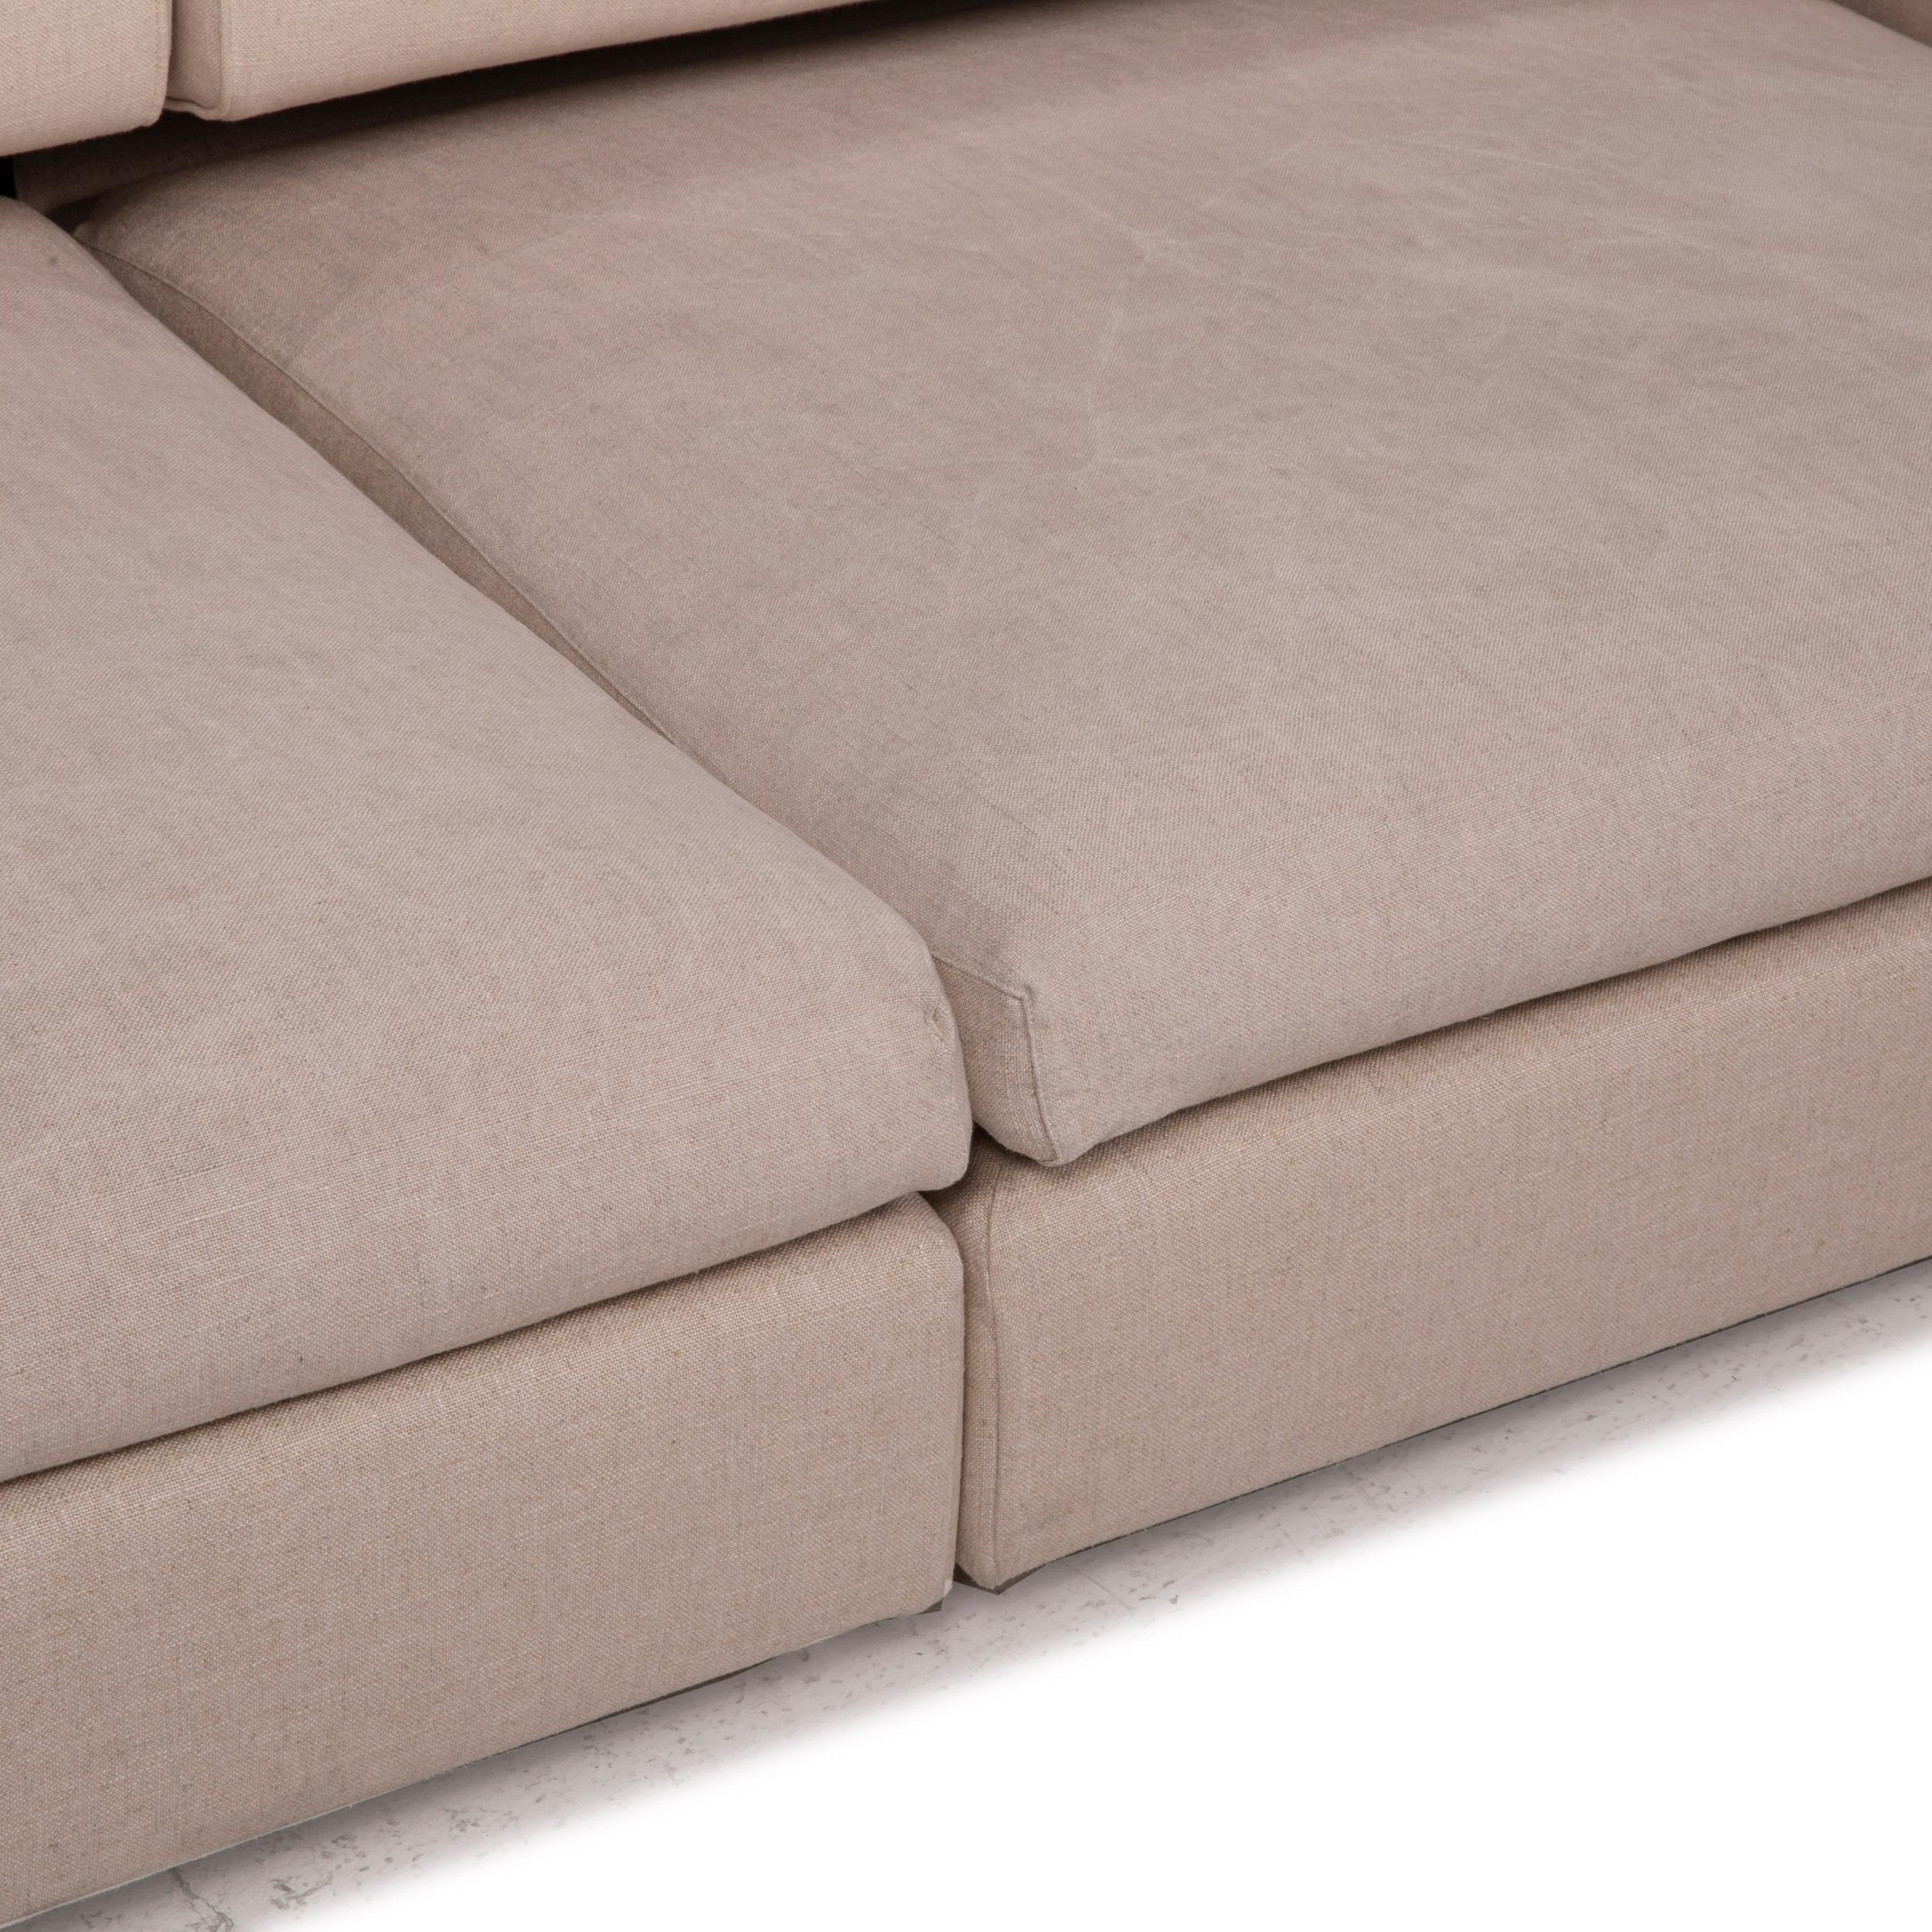 2 seater fabric sofa